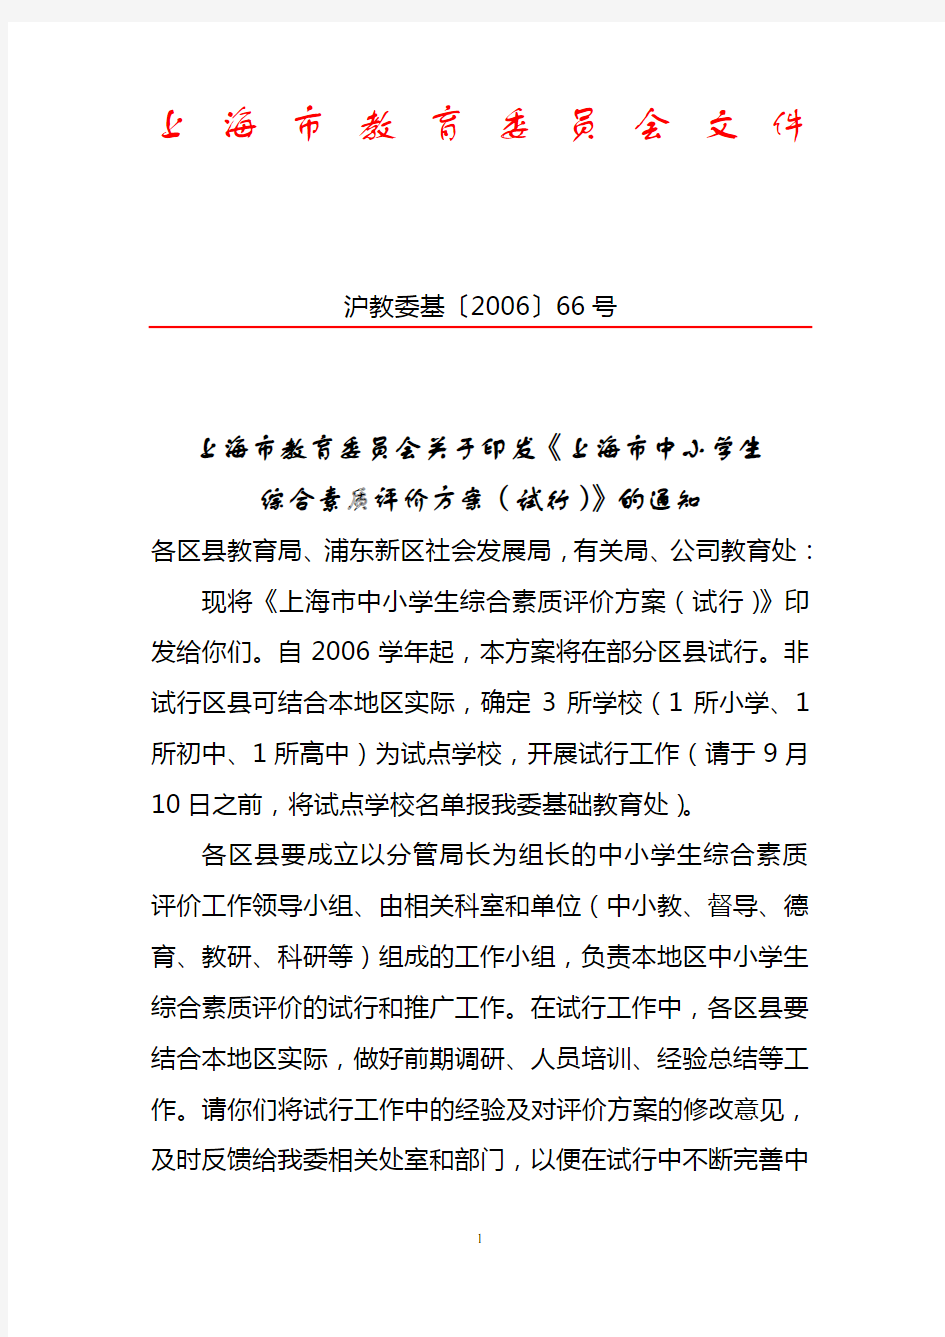 上海市教育委员会关于印发《上海市中小学生综合素质评价方案(试行)》的通知